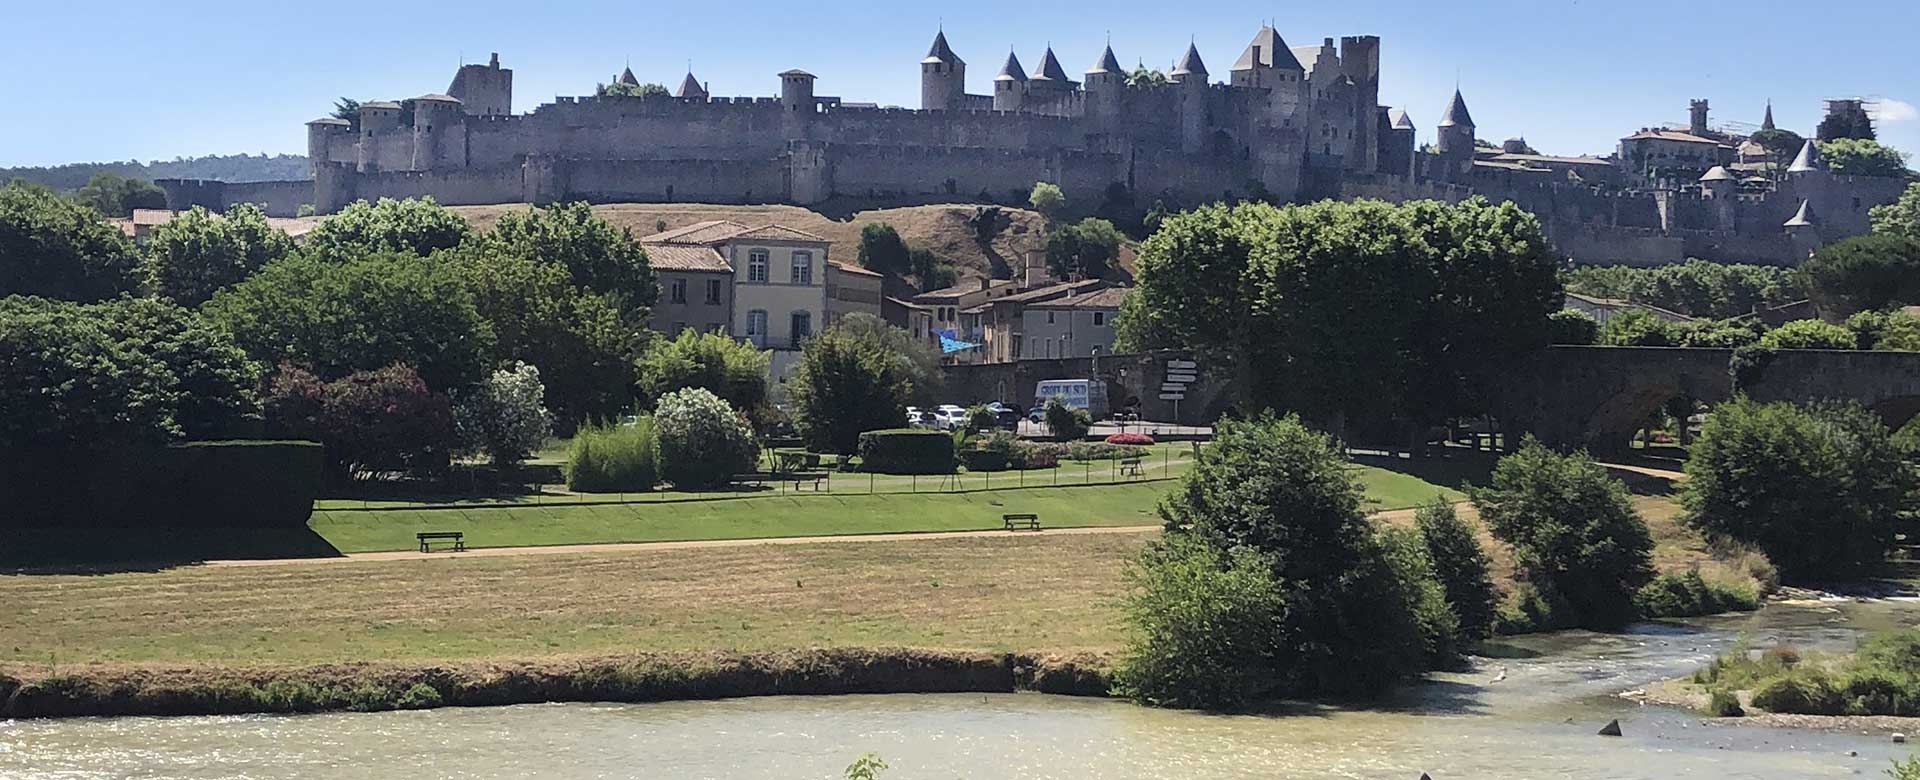 Camping Montolieu ligt vlakbij de stad Carcassonne.